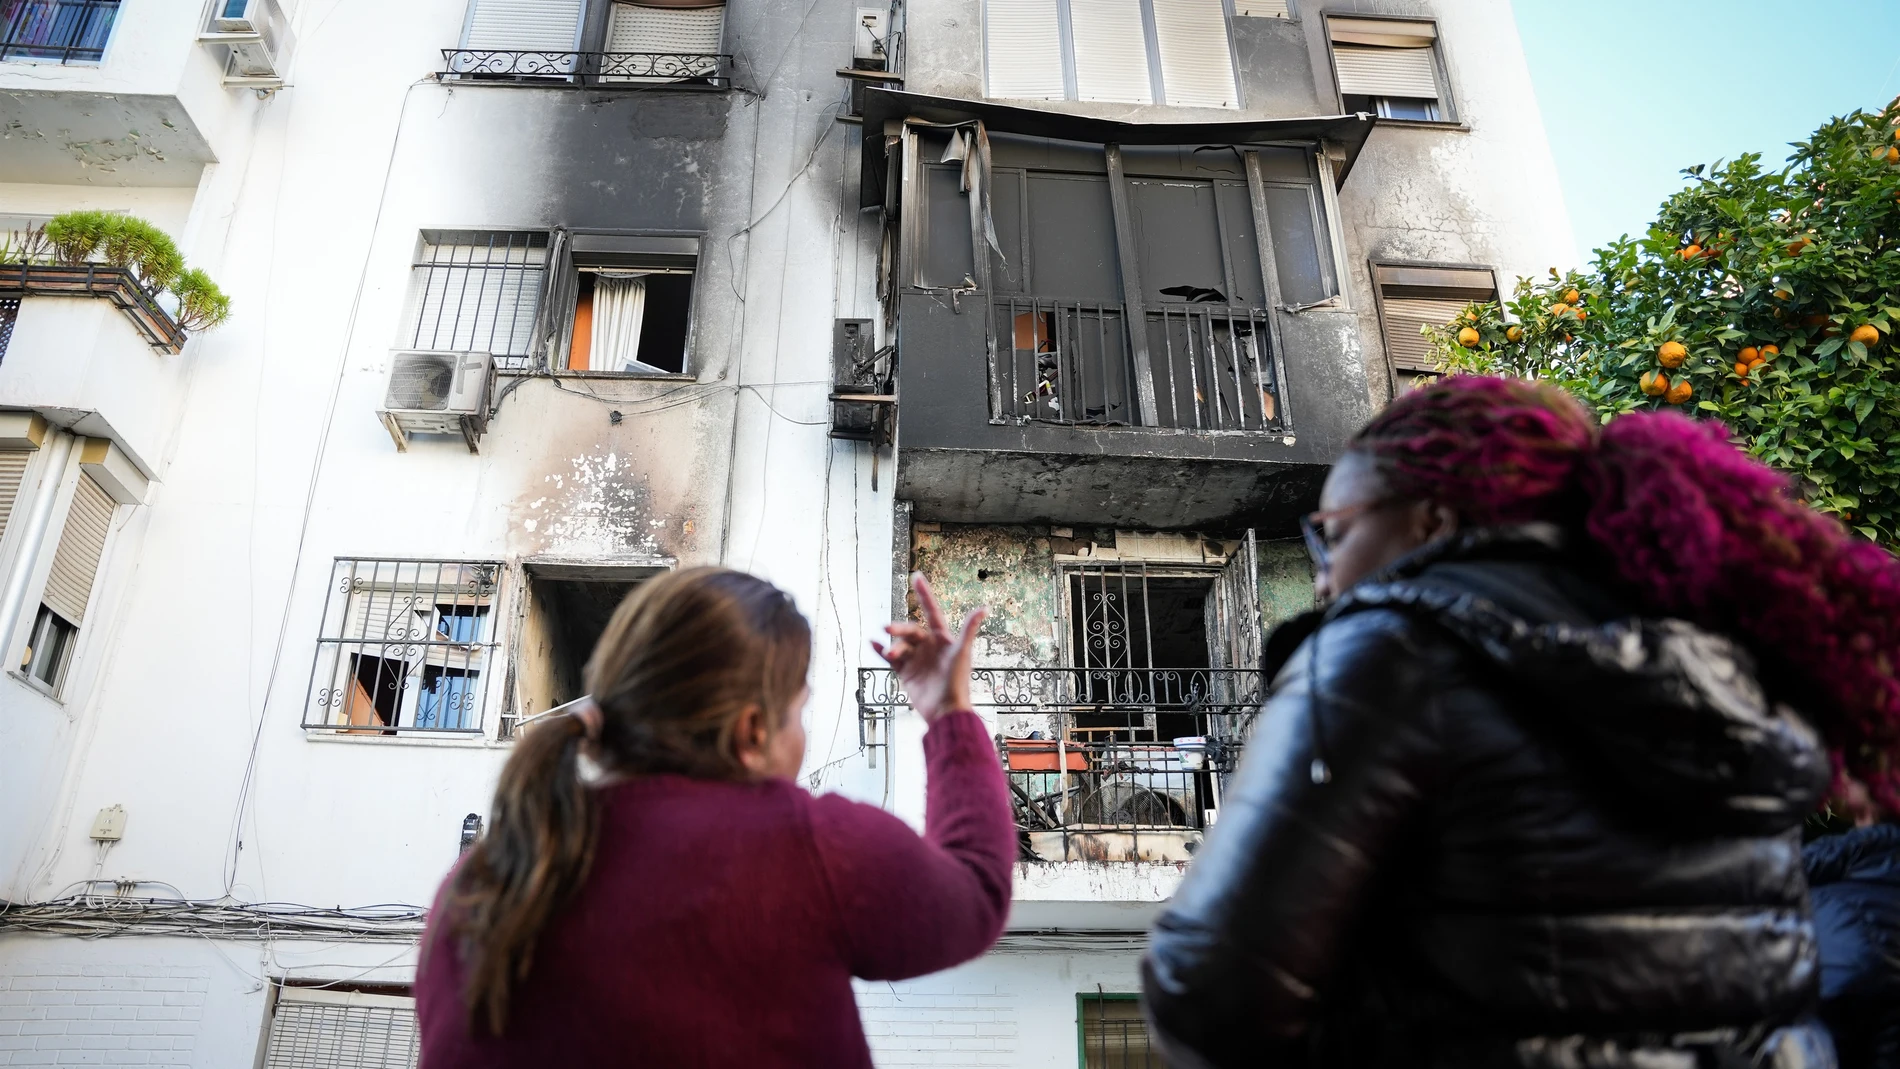 La inquilina piso incendiado en la Macarena: "No hemos podido salvar nada.Salimos con lo puesto"